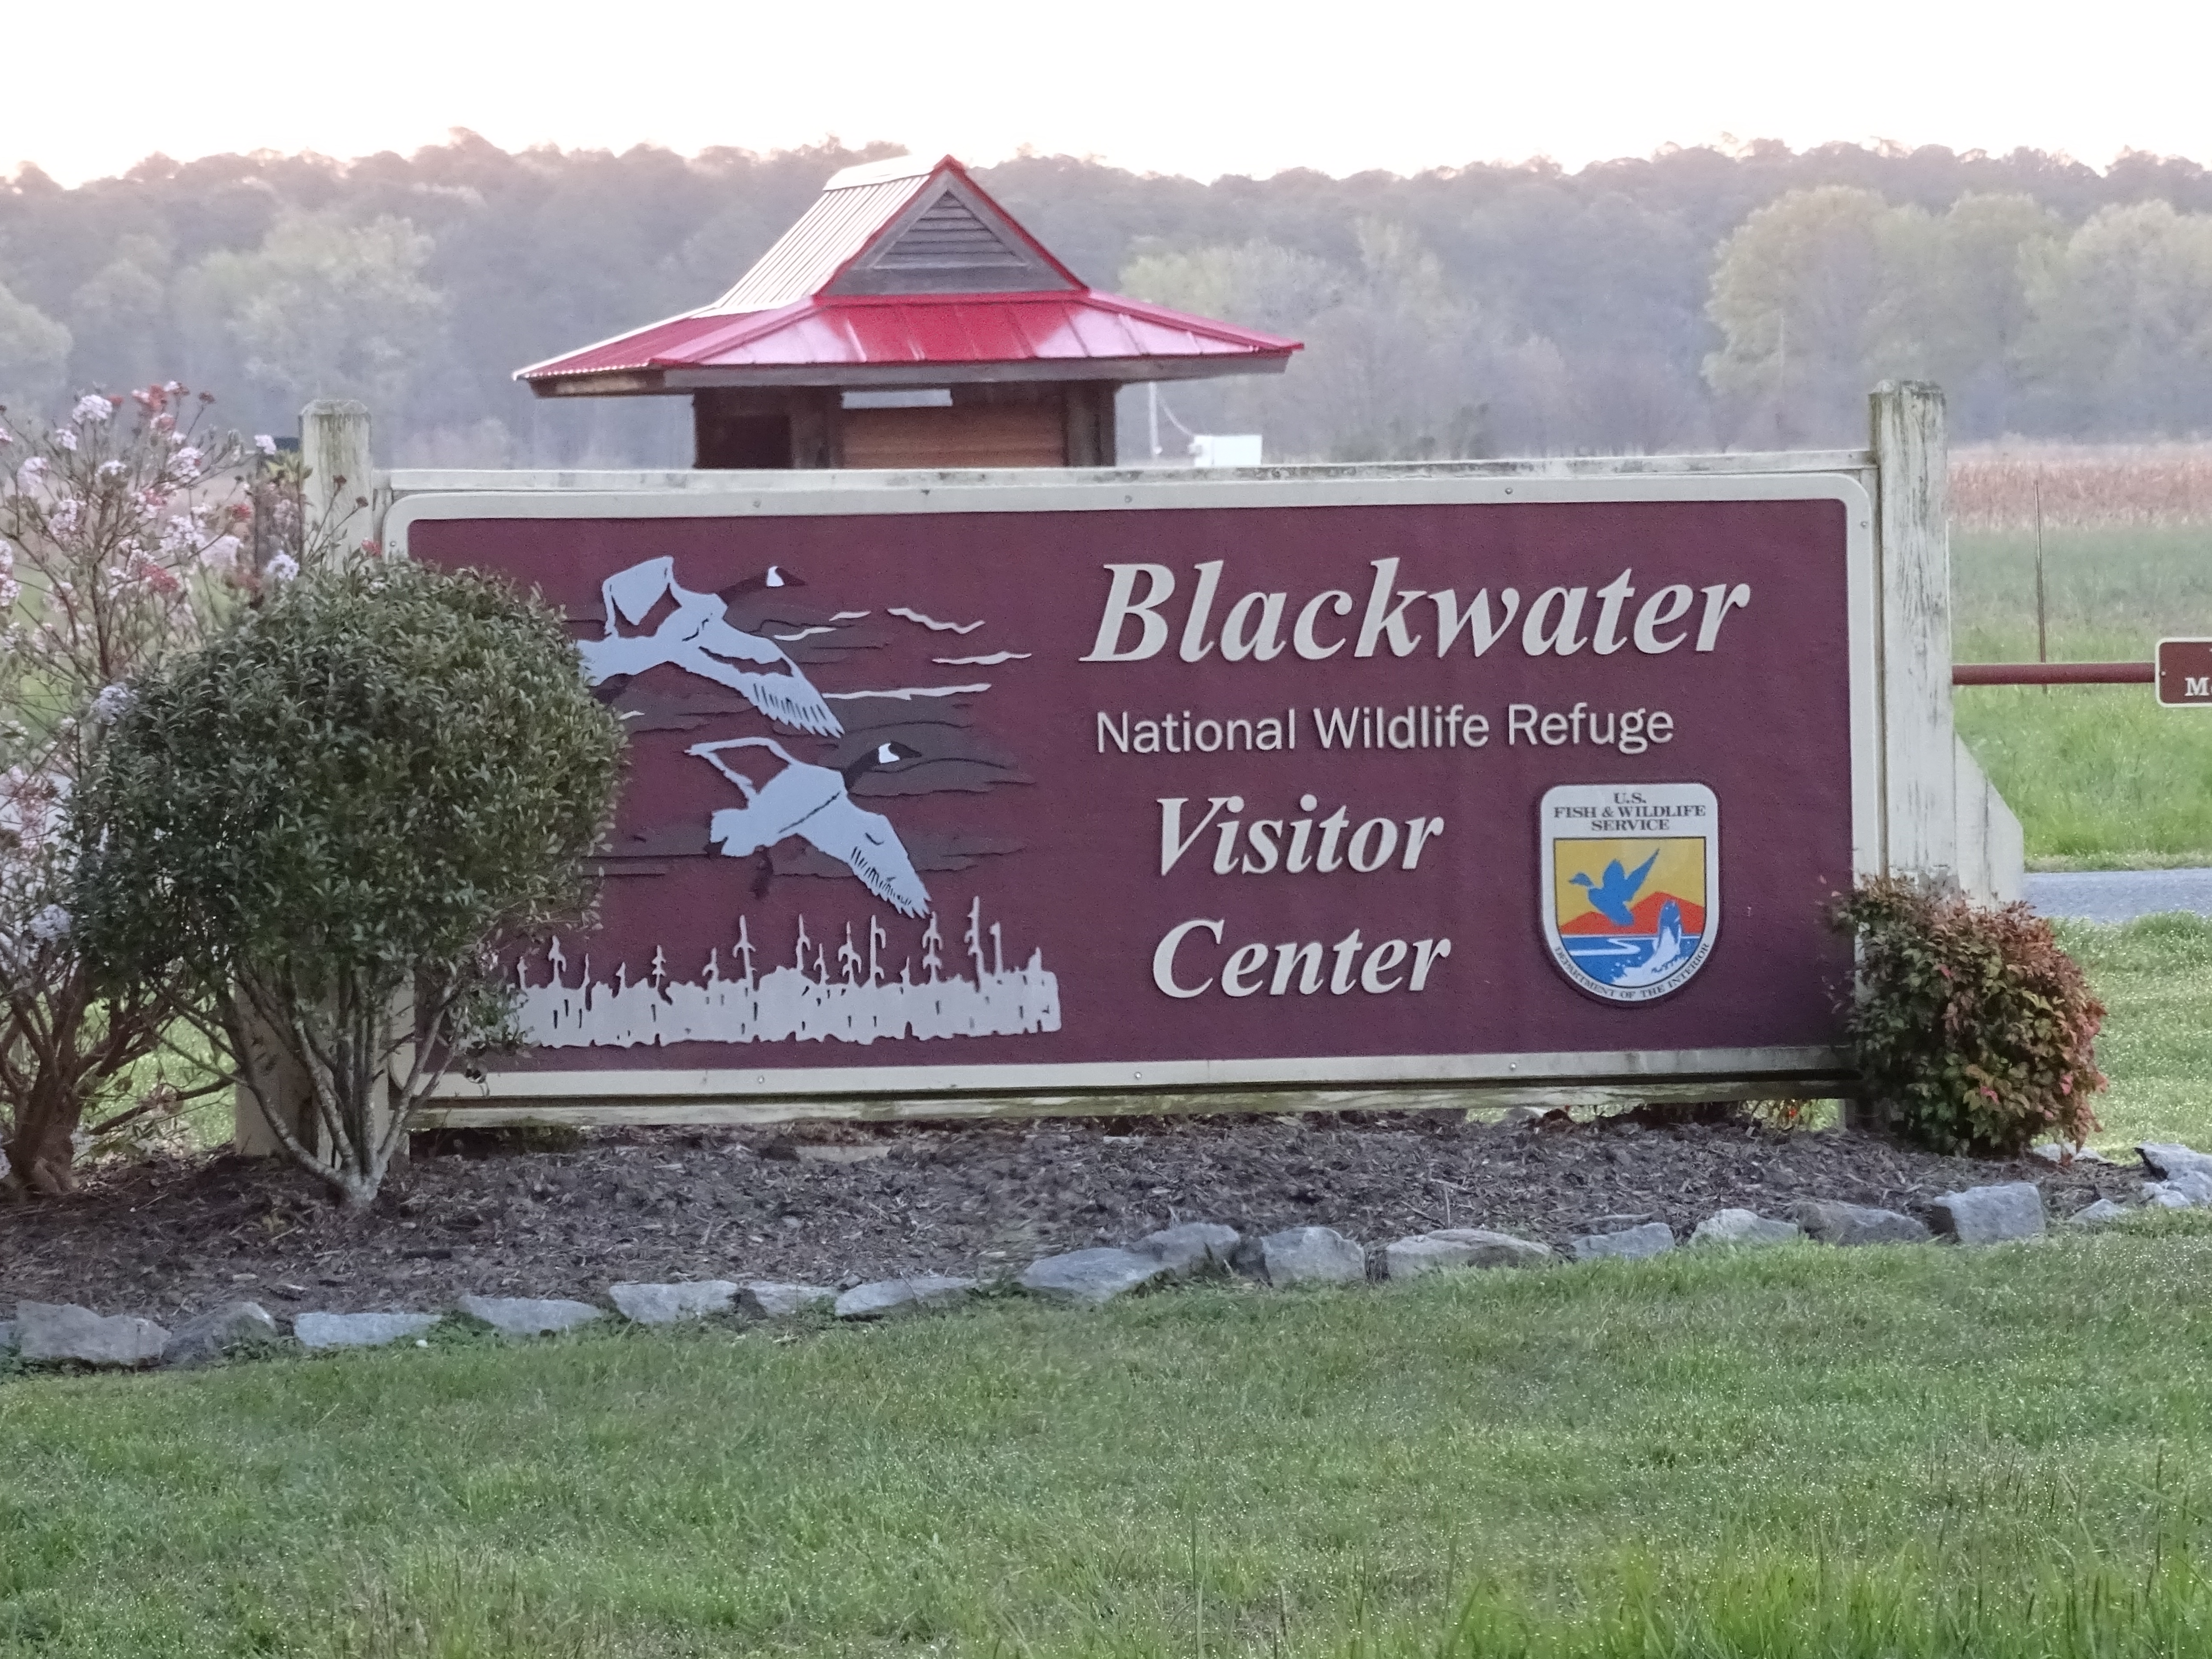 Blackwater national wildlife refuge visitor center park sign